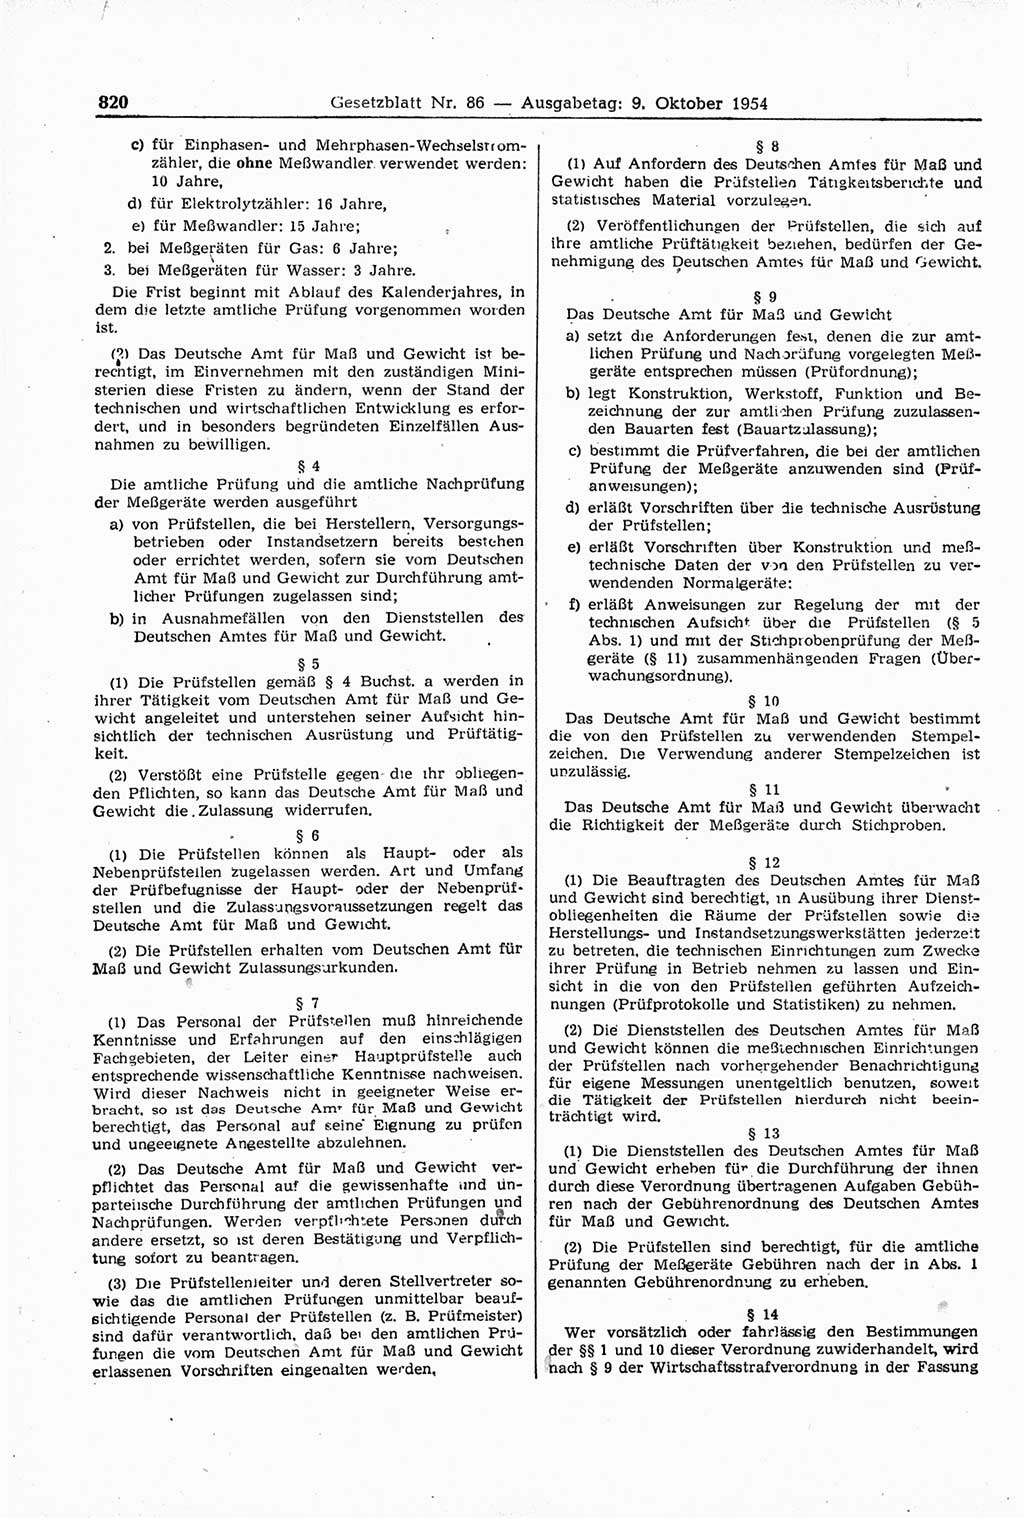 Gesetzblatt (GBl.) der Deutschen Demokratischen Republik (DDR) 1954, Seite 820 (GBl. DDR 1954, S. 820)